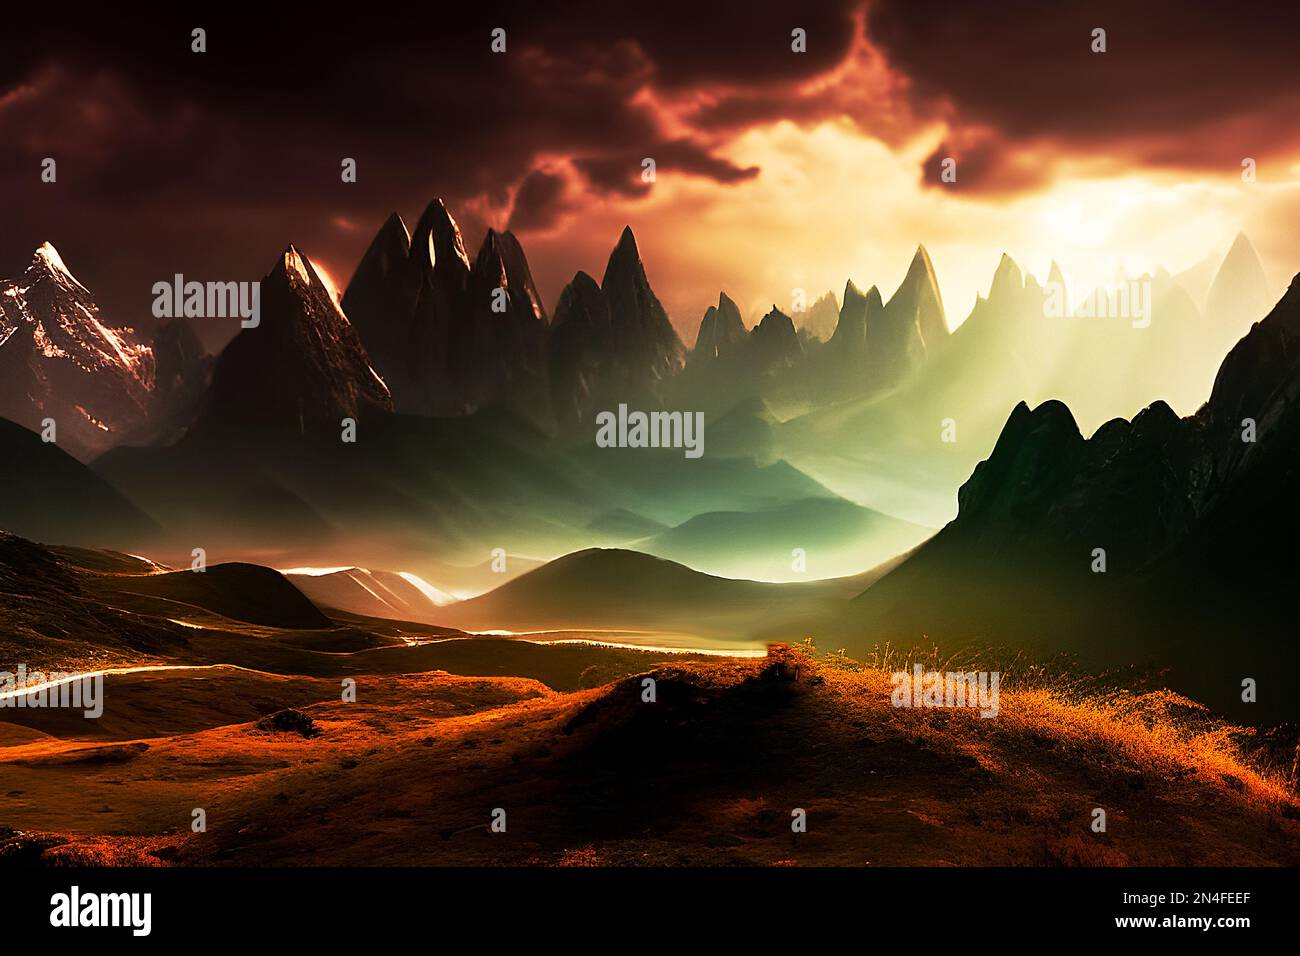 Mountain range at sundown depiction. Stock Photo